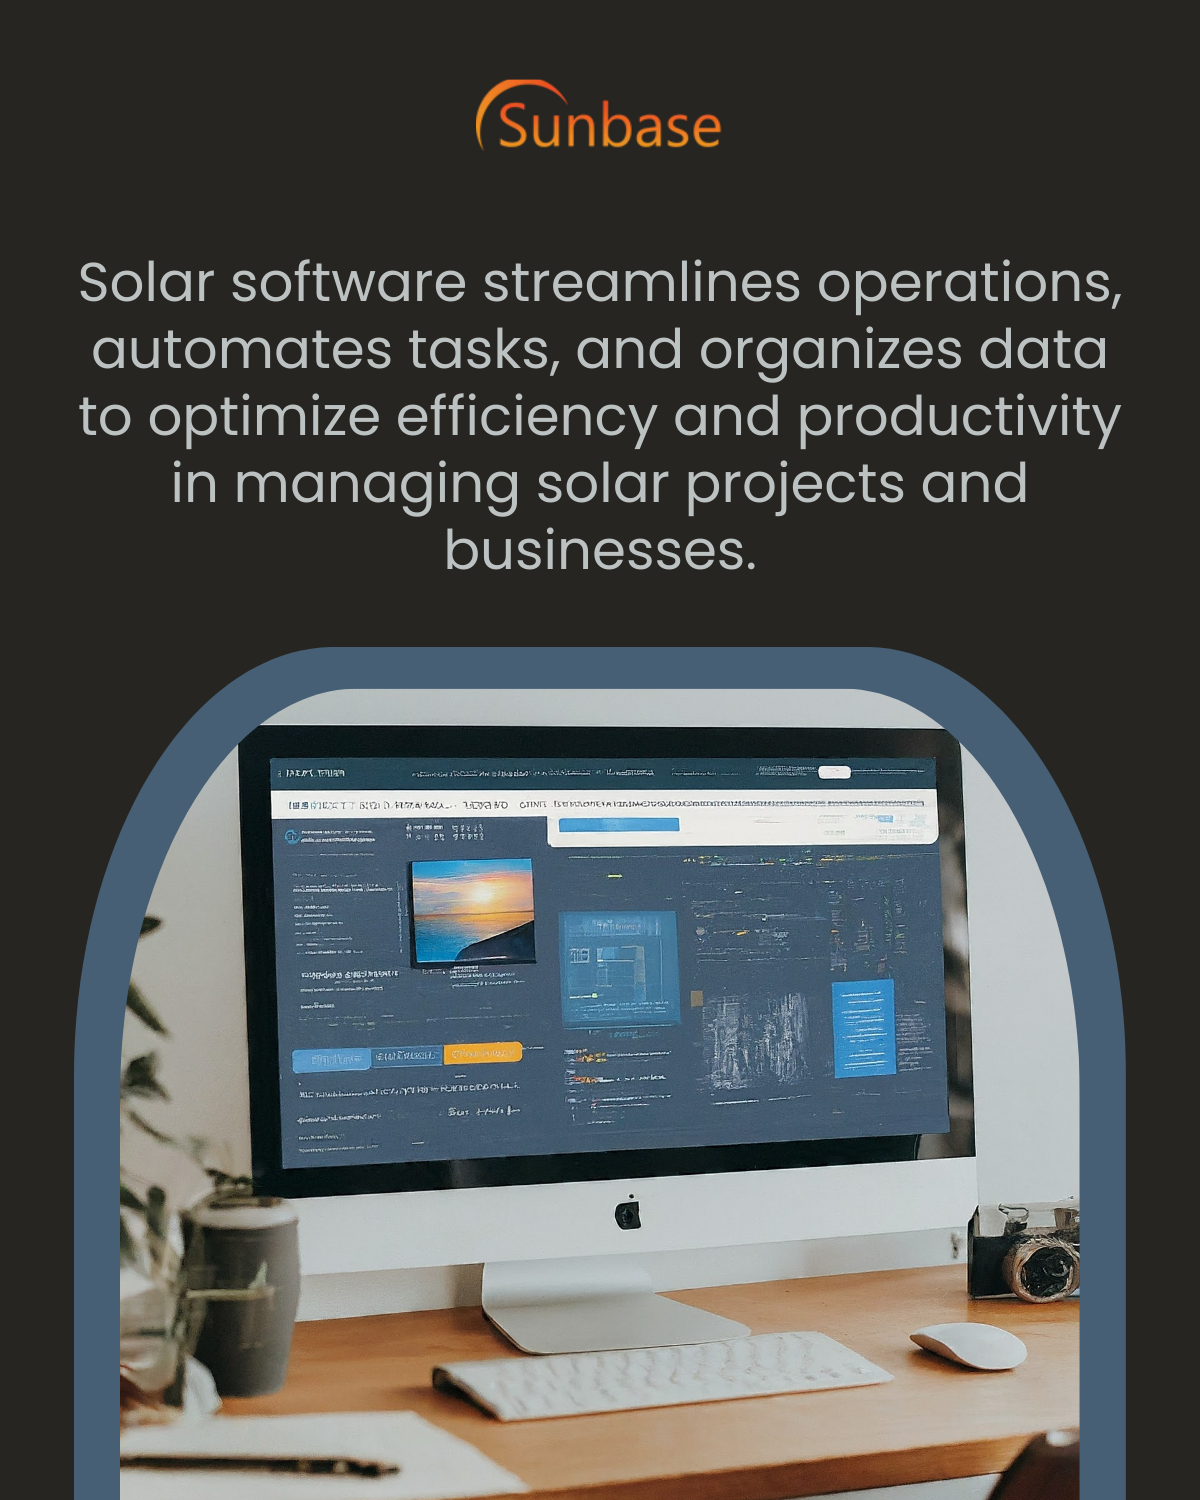 Solar Software innovations